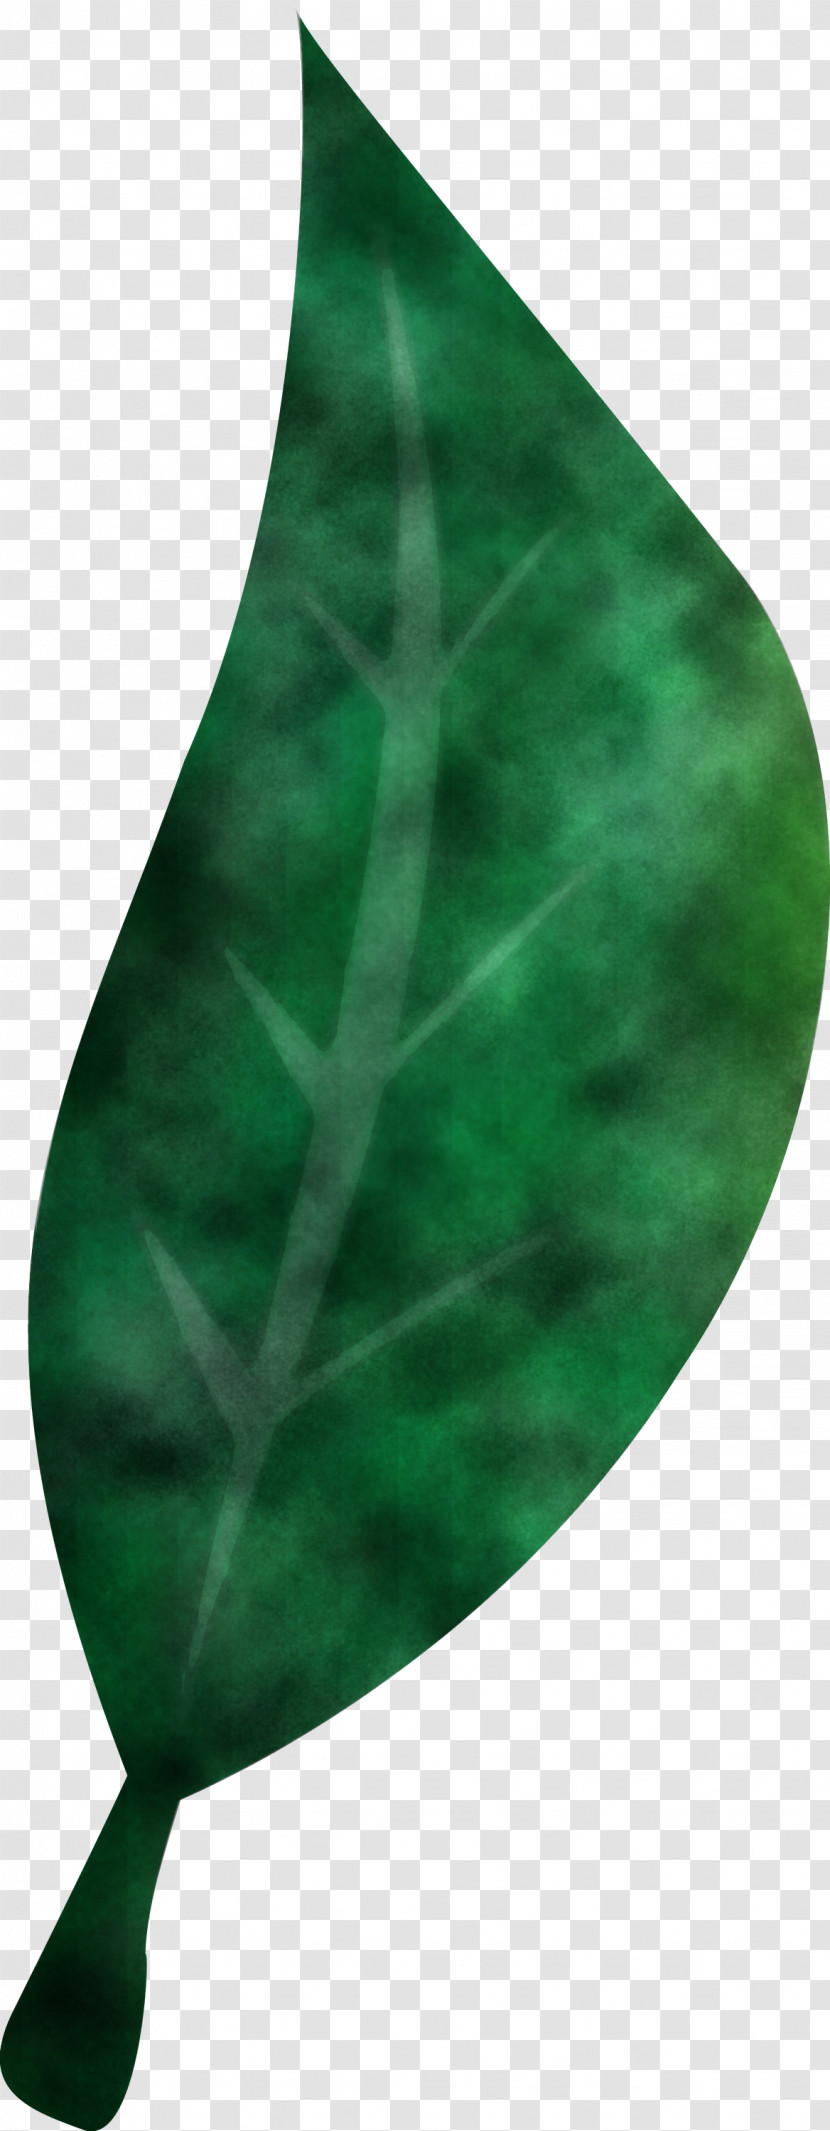 Leaf Green Biology Science Plants Transparent PNG